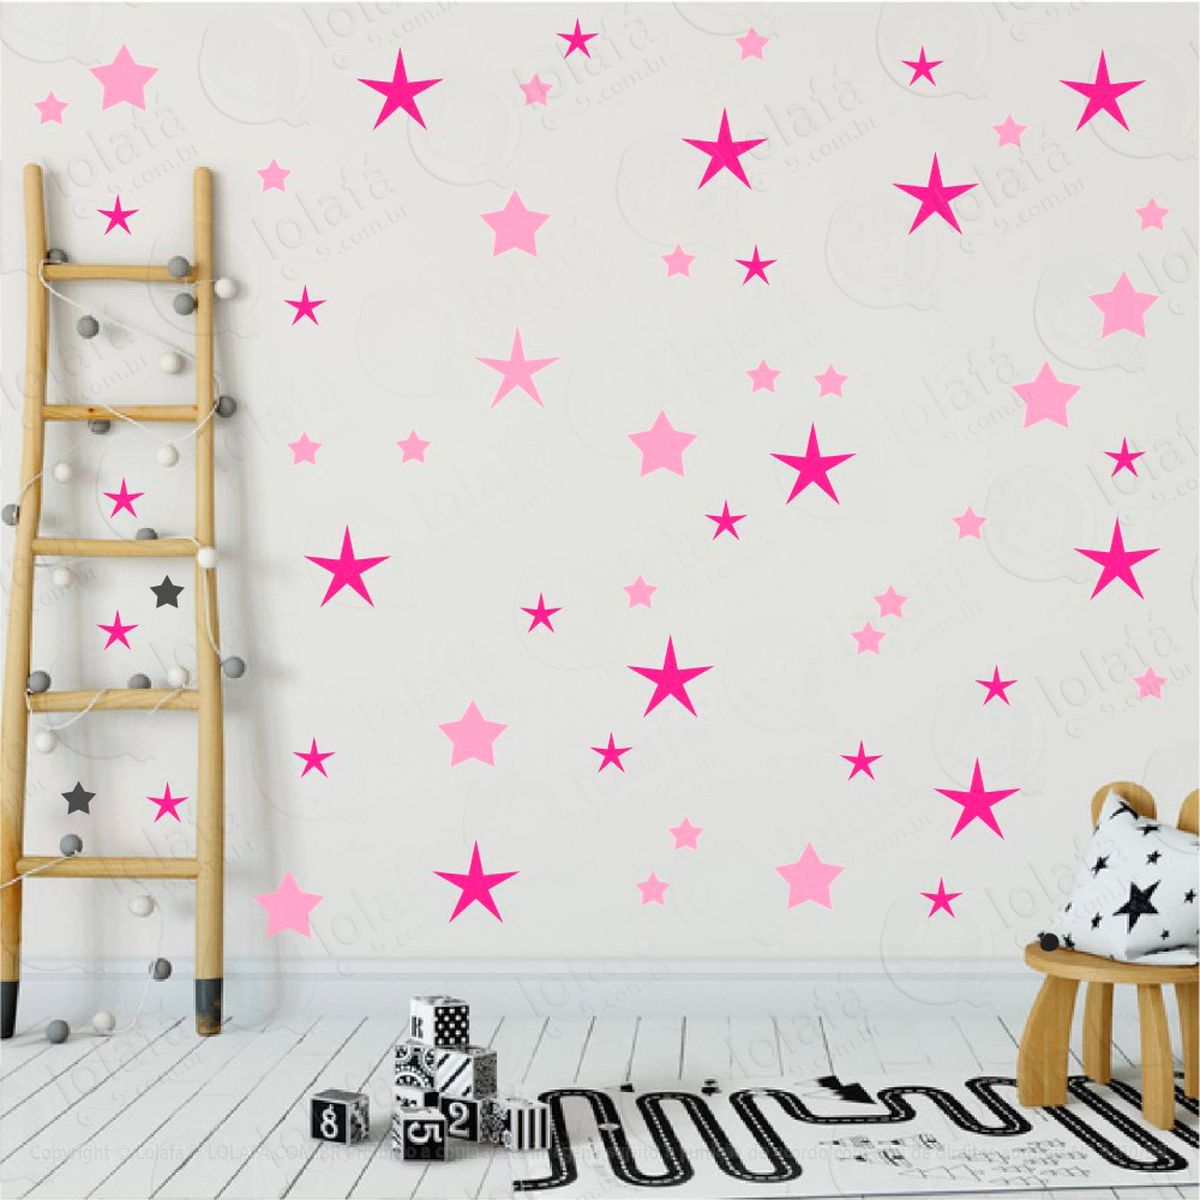 adesivos estrelas 90 peças adesivos para quarto de bebê infantil - mod:18